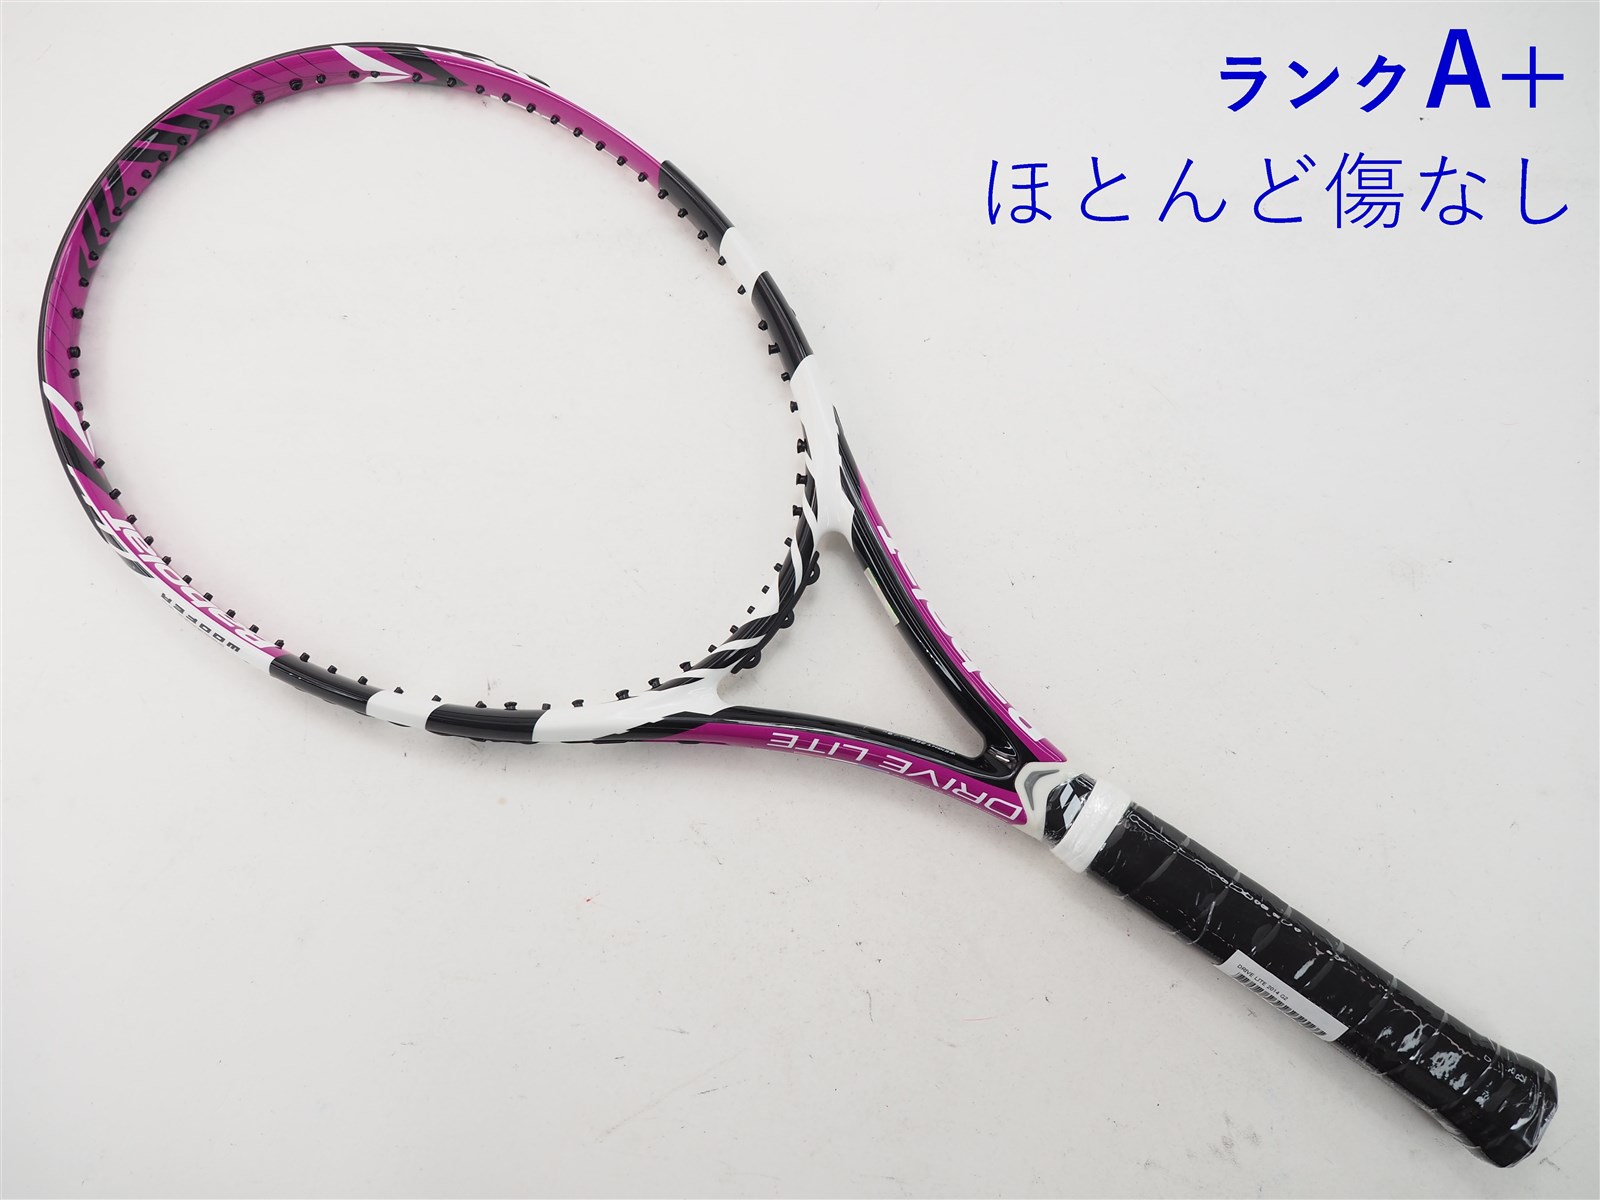 テニスラケット バボラ ピュア ドライブ ライト ピンク 2014年モデル (G1)BABOLAT PURE DRIVE LITE PINK 2014